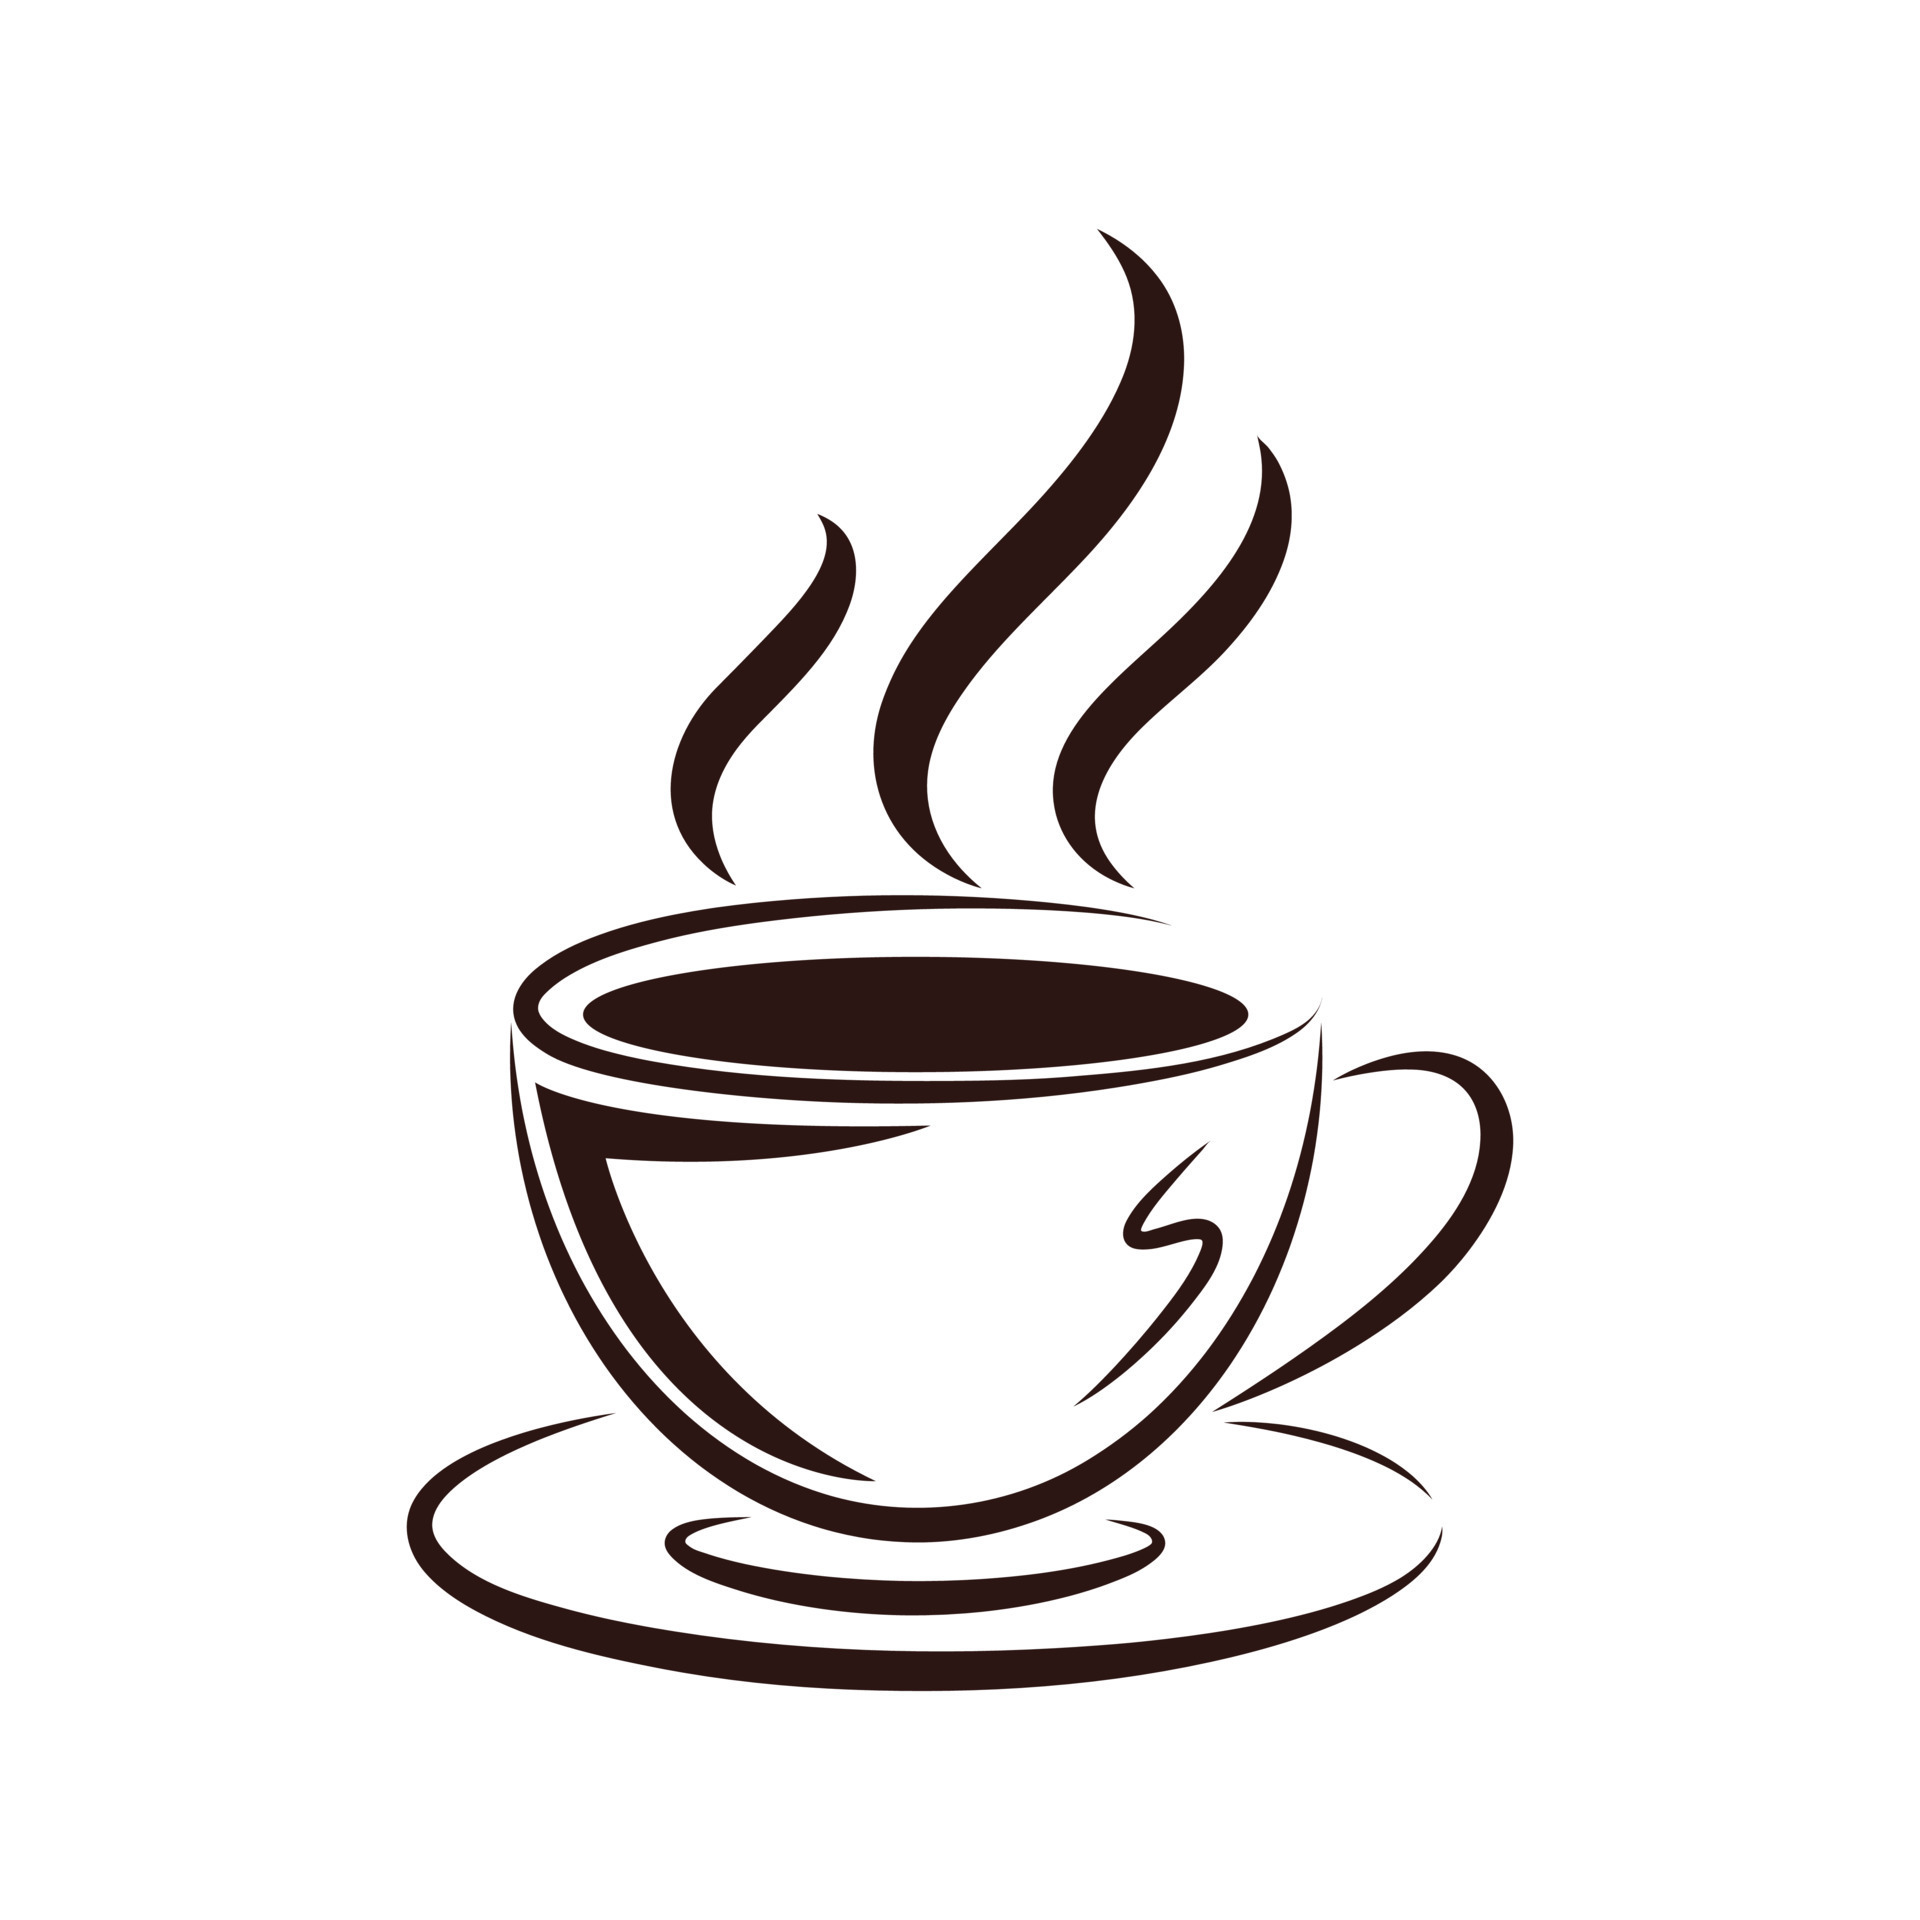 Pence Cap Nuevo significado icono de taza de cafe 5871328 Vector en Vecteezy